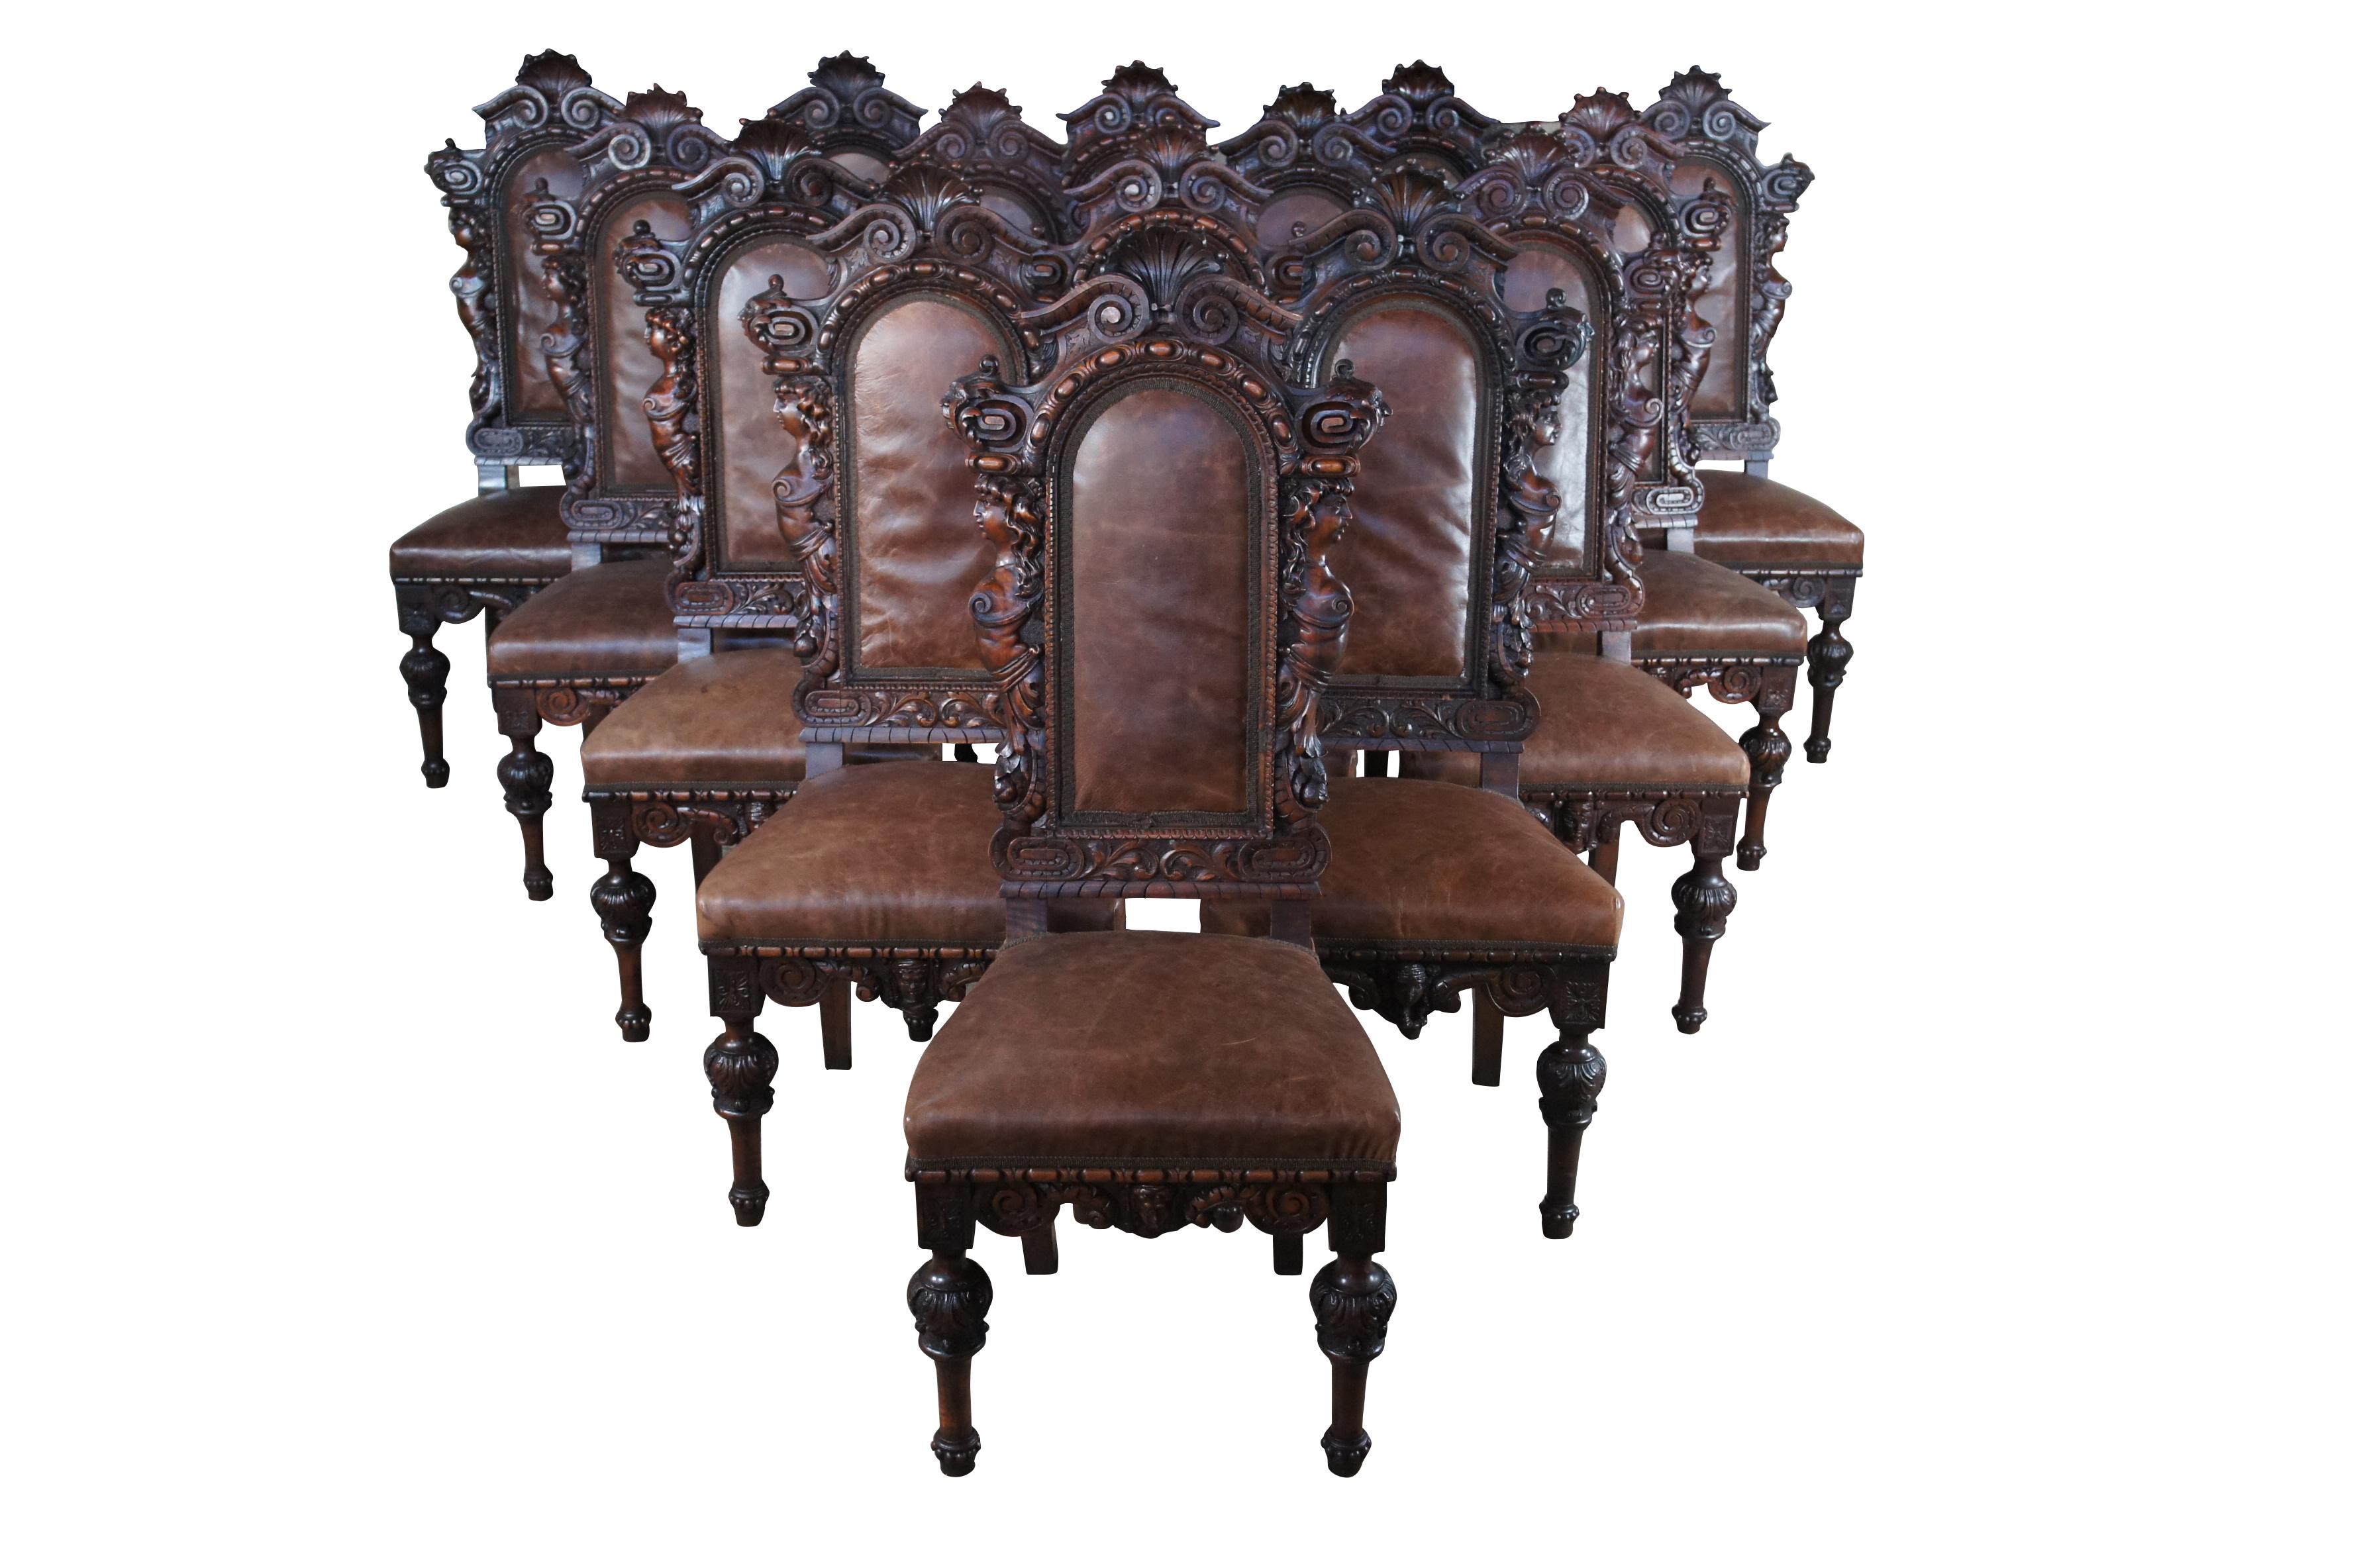 Très rares chaises de salle à manger à haut dossier en acajou de style Renaissance italienne, vers les années 1850-1870. Chaque chaise est sculptée à la main, avec un dossier haut, arqué et chantourné, centré par une coquille festonnée. Les côtés